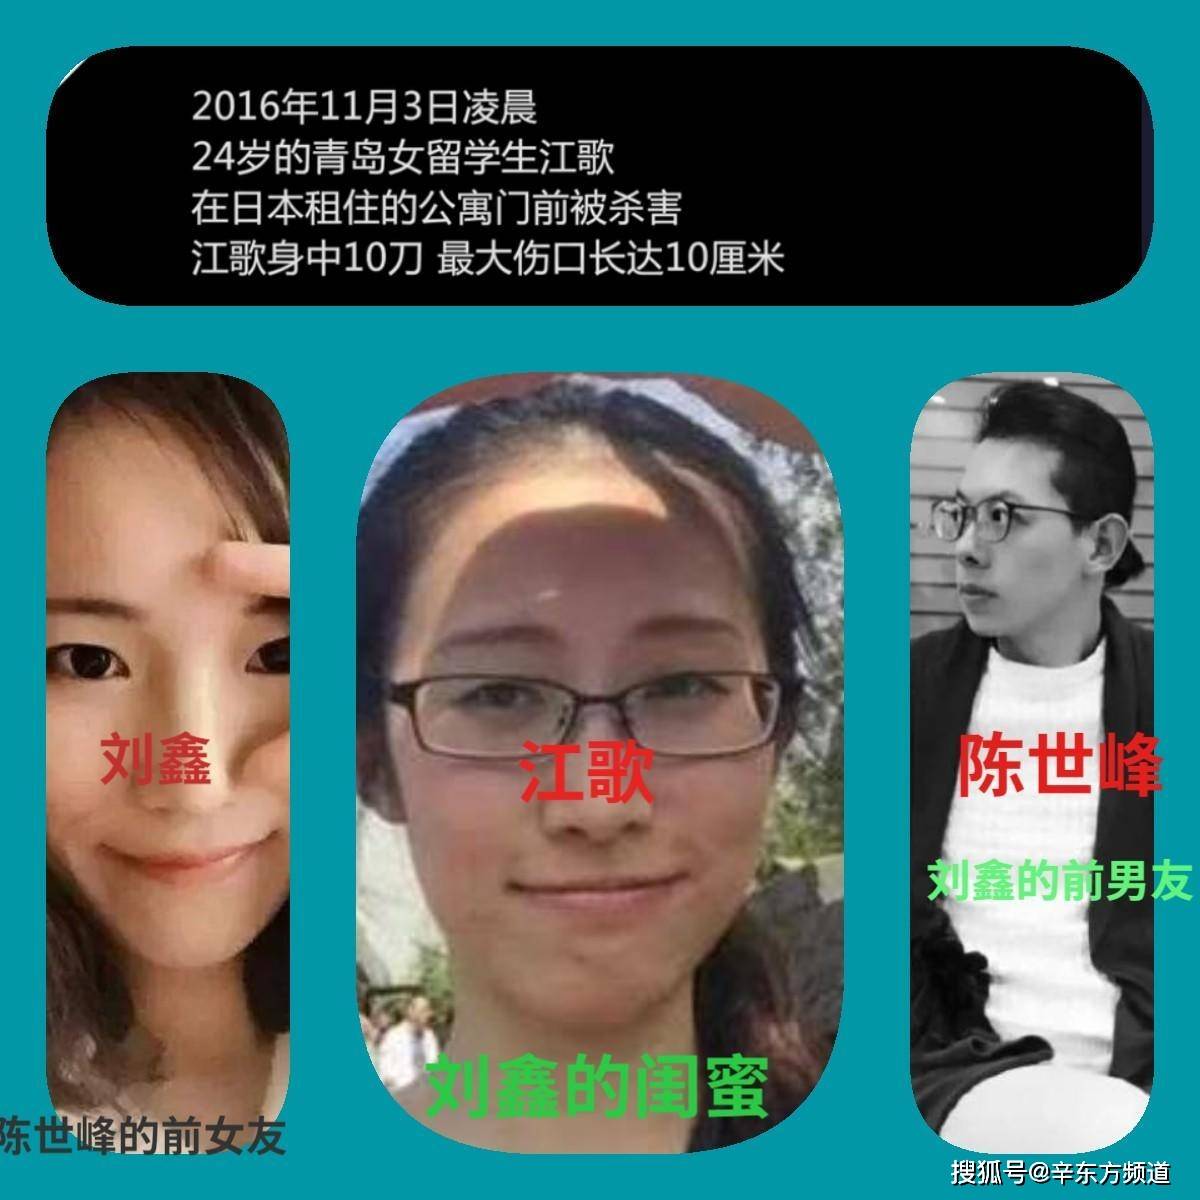 2016年11月3凌晨,中国山东留学生江歌在日本遇害身亡,享年24岁